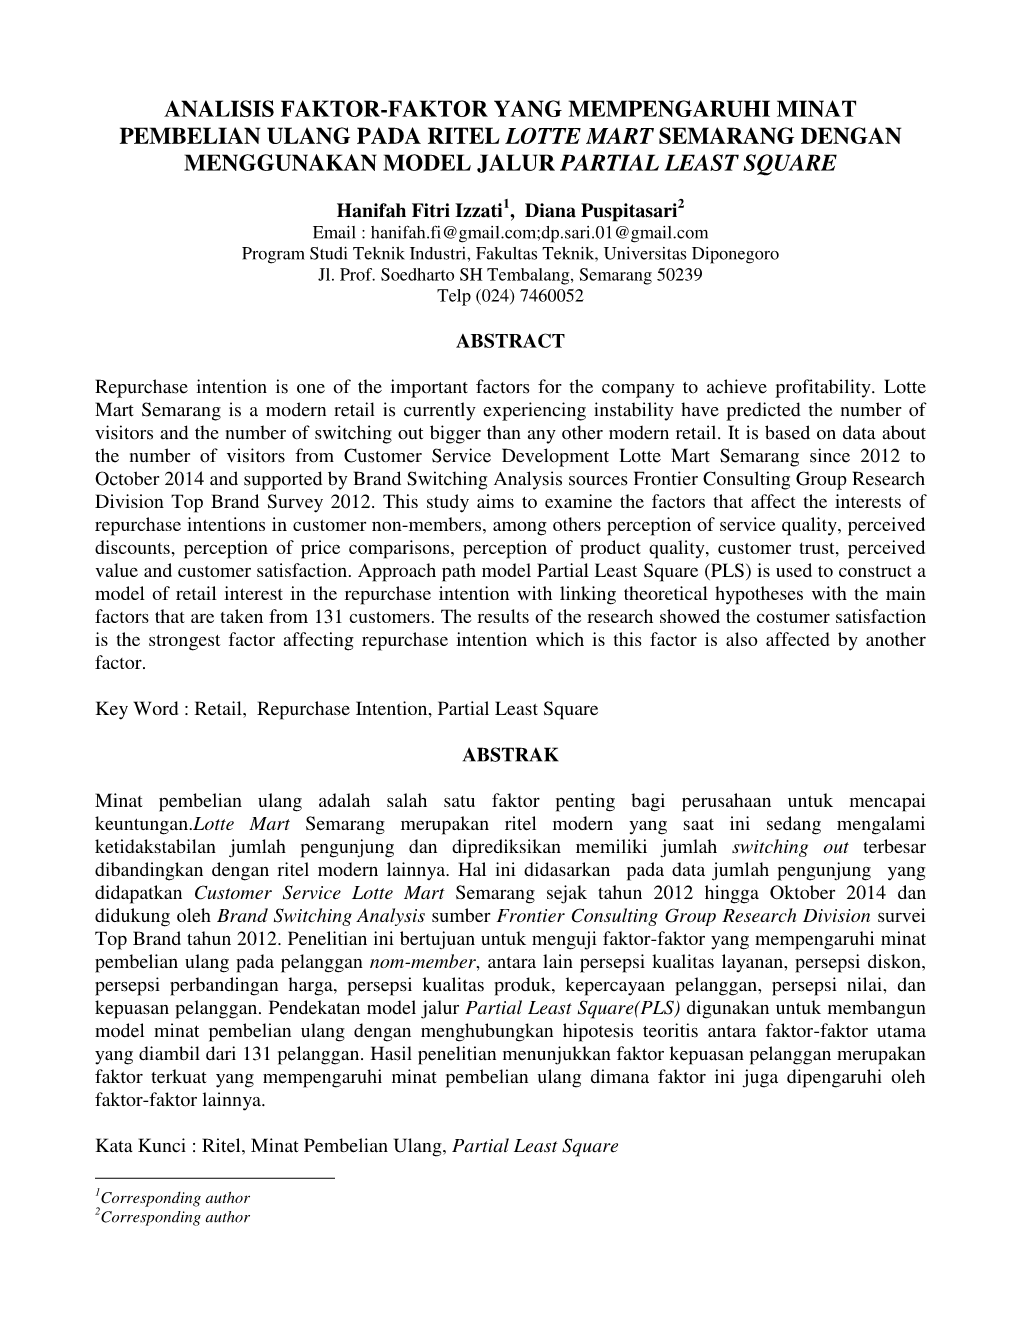 Analisis Faktor-Faktor Yang Mempengaruhi Minat Pembelian Ulang Pada Ritel Lotte Mart Semarang Dengan Menggunakan Model Jalur Partial Least Square